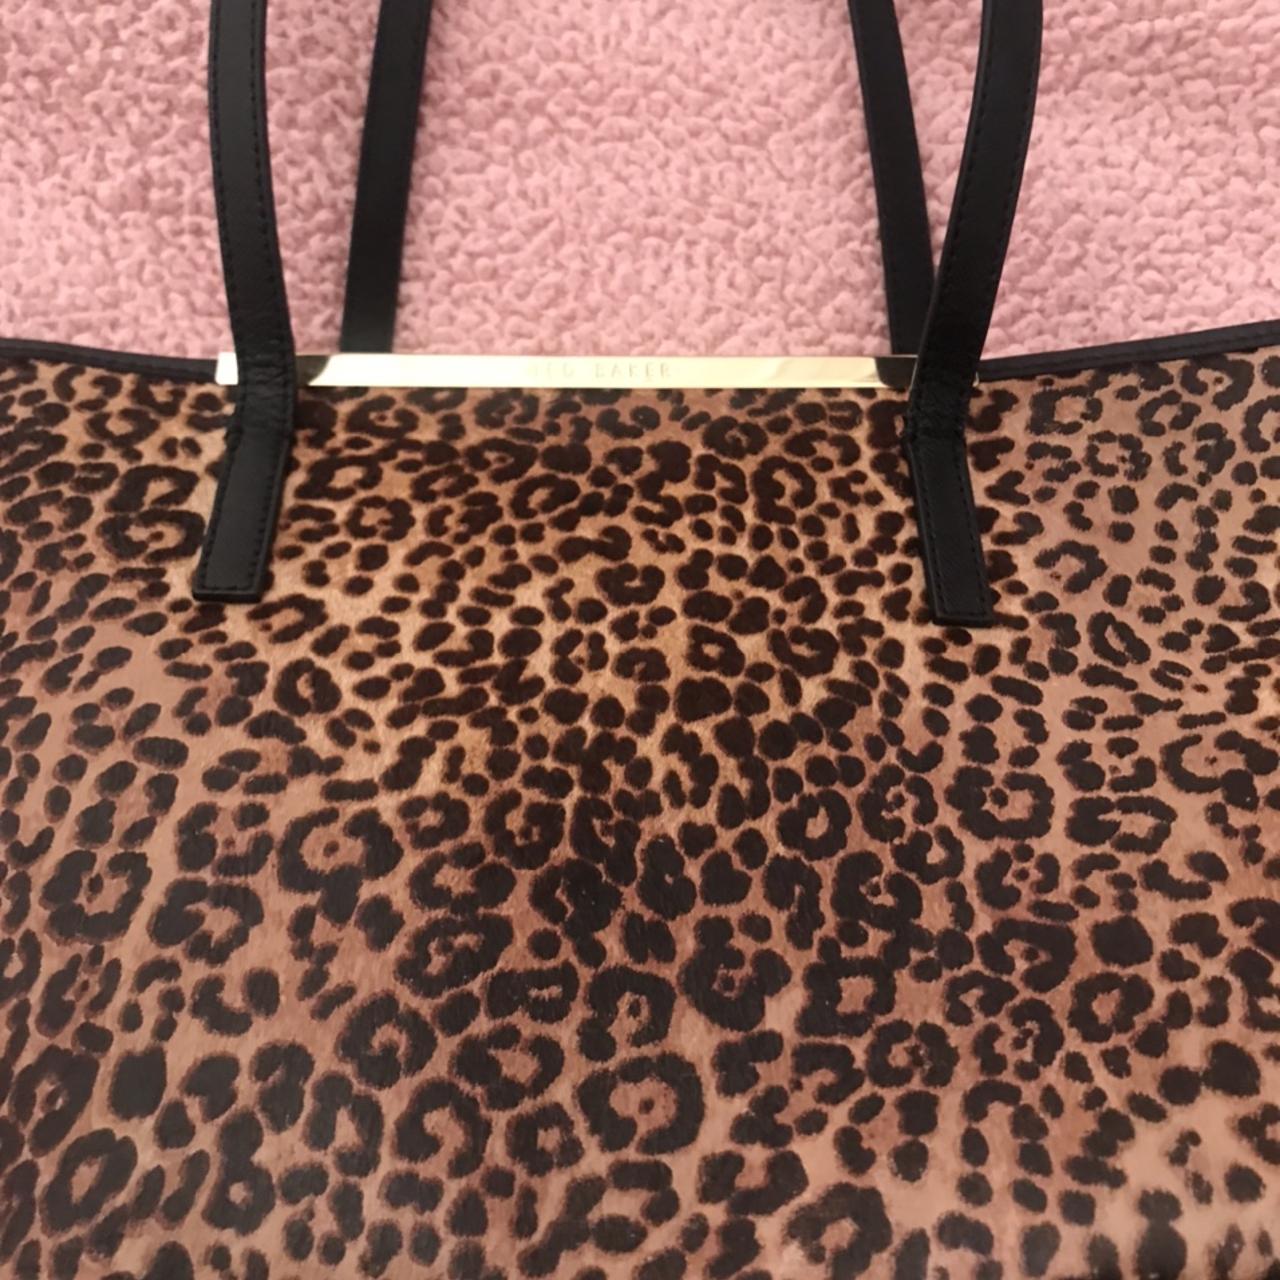 Ted baker leopard print bag really good *reduced *.... - Depop